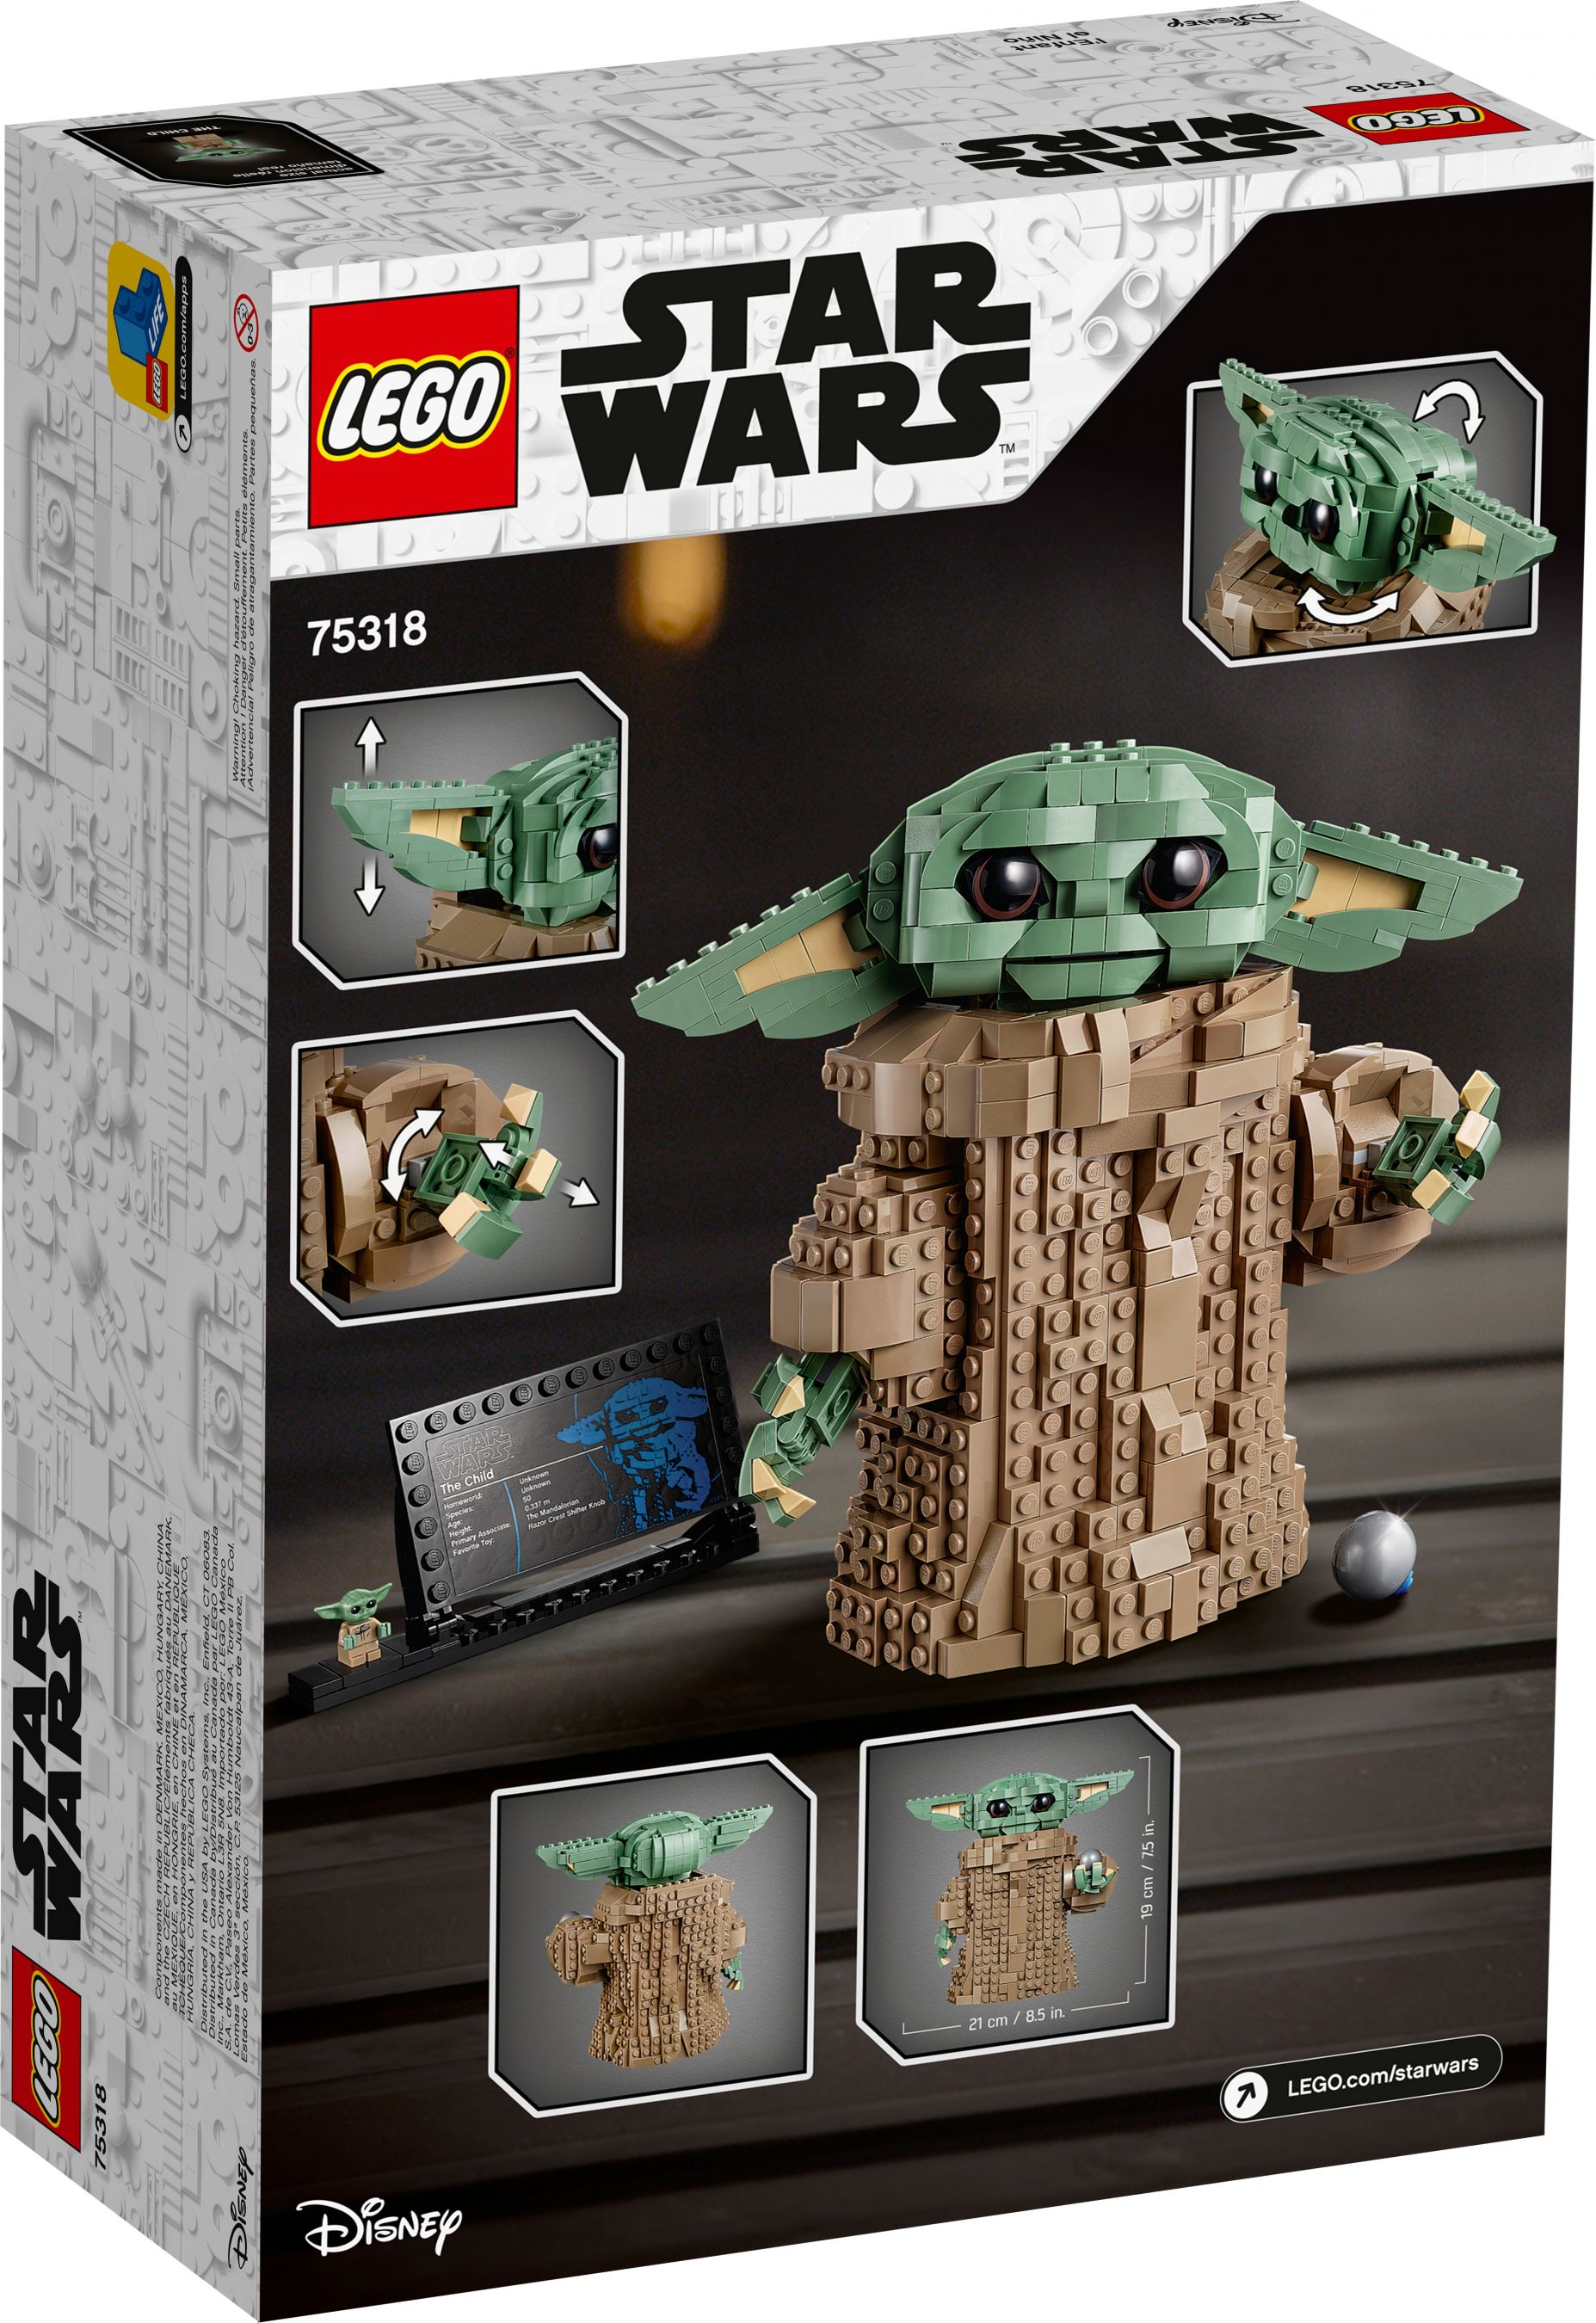 LEGO Star Wars 75318 Das Kind LEGO_75318_alt11.jpg